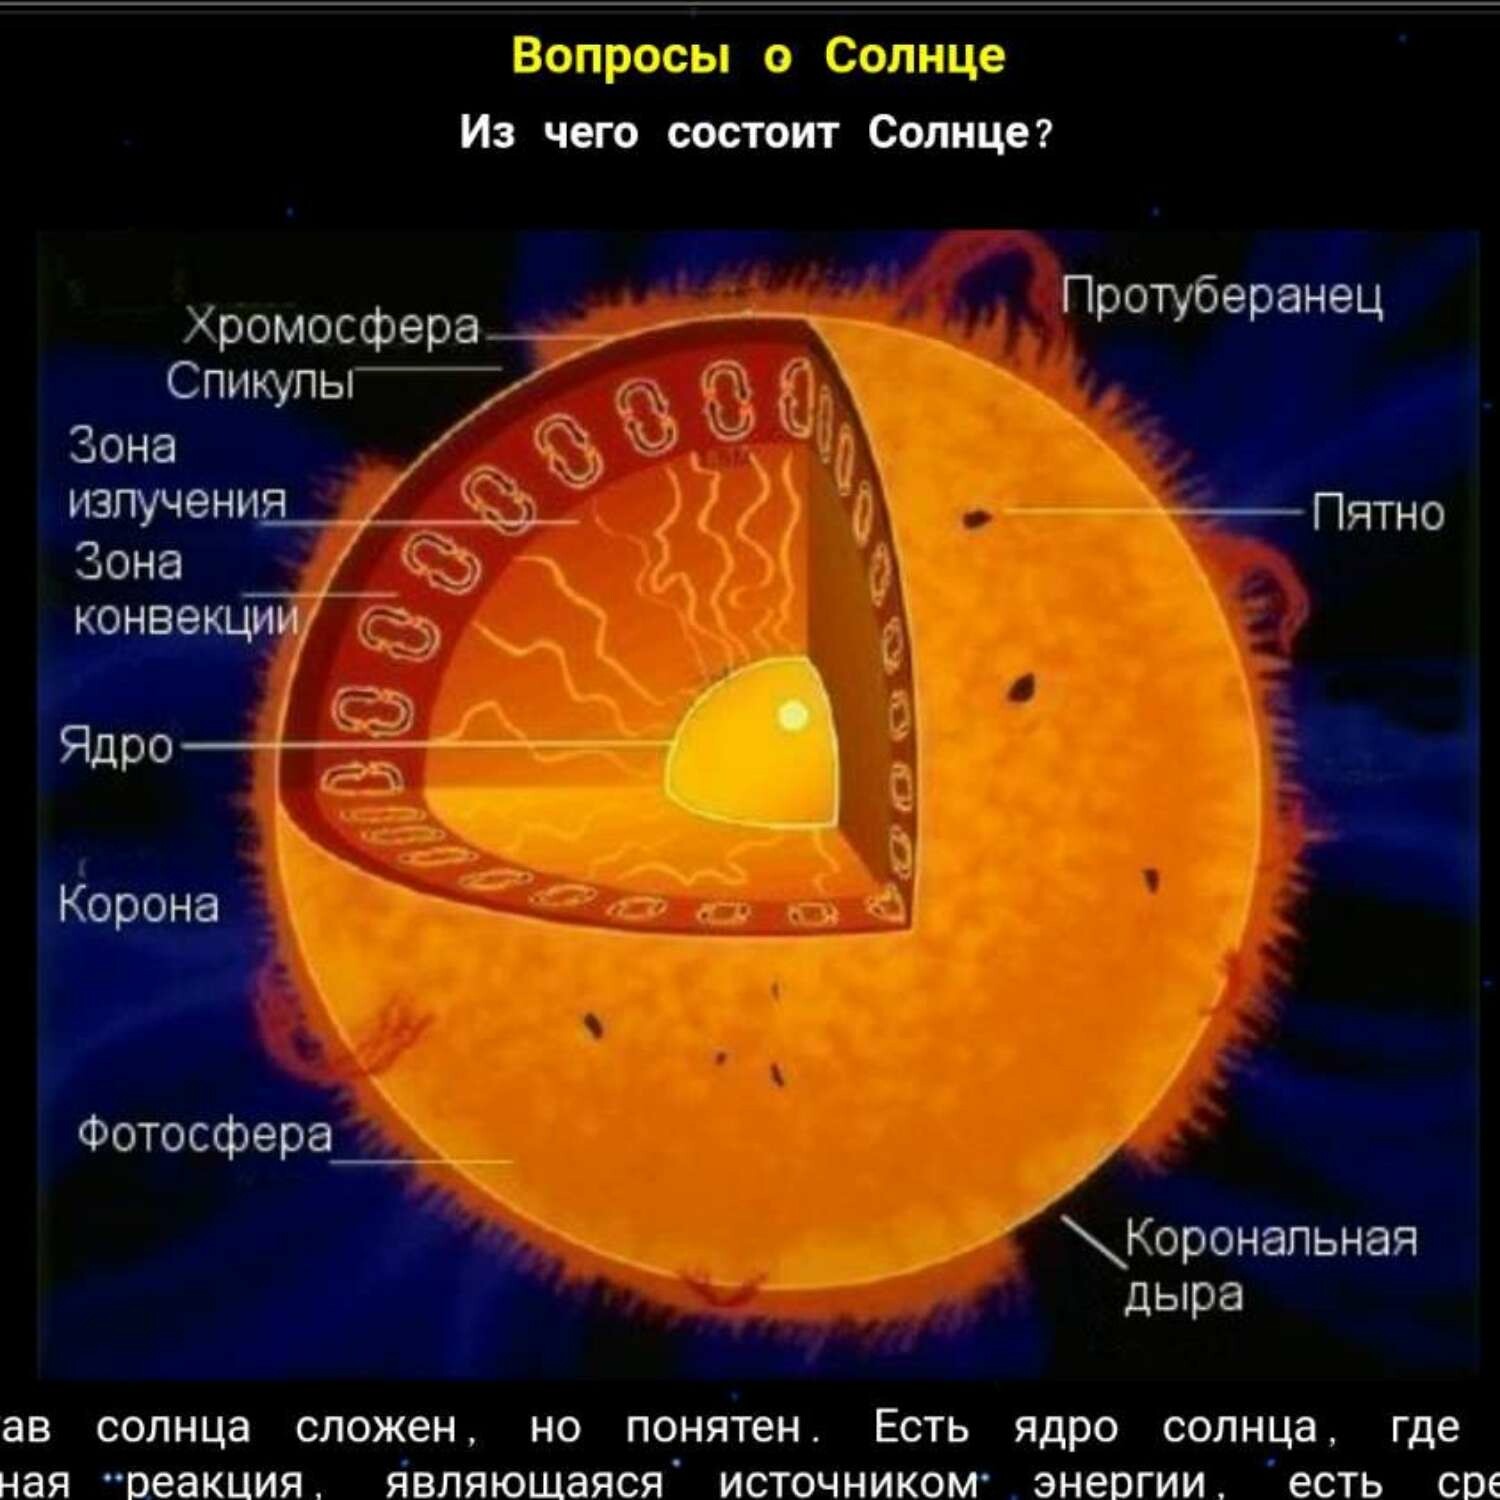 Хромосфера солнечная корона. Строение солнца Фотосфера хромосфера корона. Строение атмосферы солнца Фотосфера хромосфера Солнечная корона. Строение солнца спикулы. Внутреннее строение солнца.